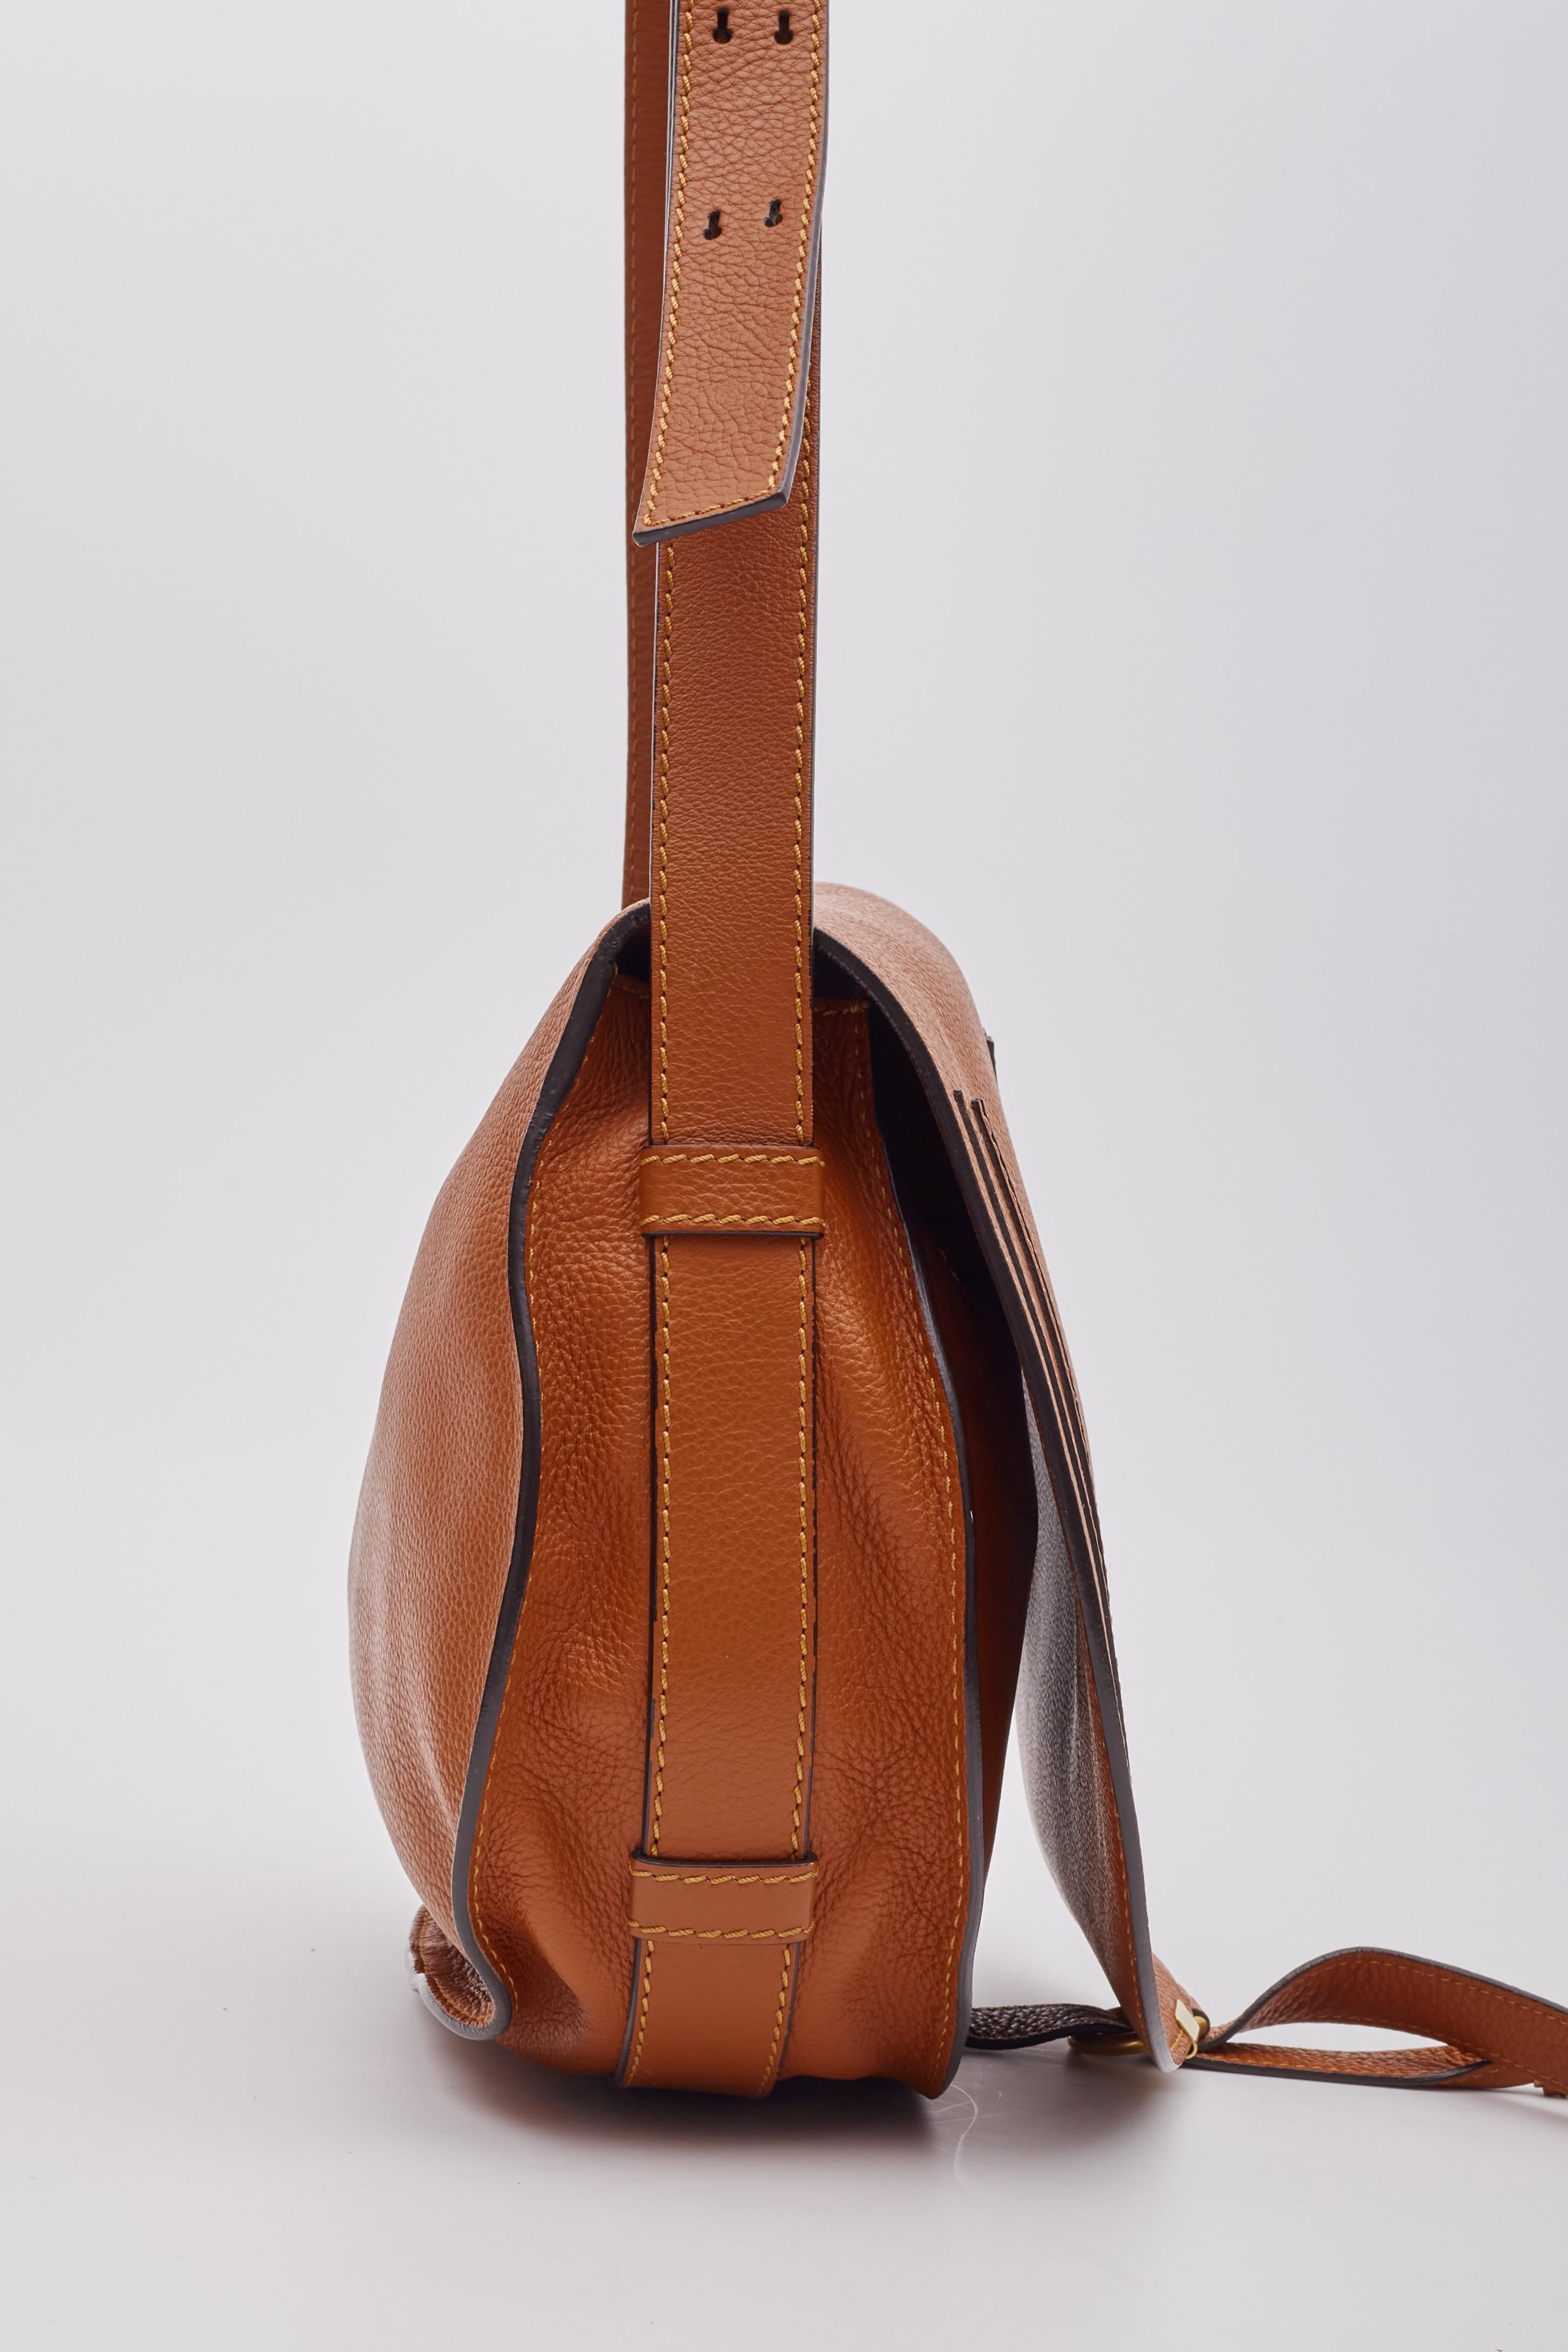 Chloe Caramel Leather Marcie Crossbody Bag Medium For Sale 1